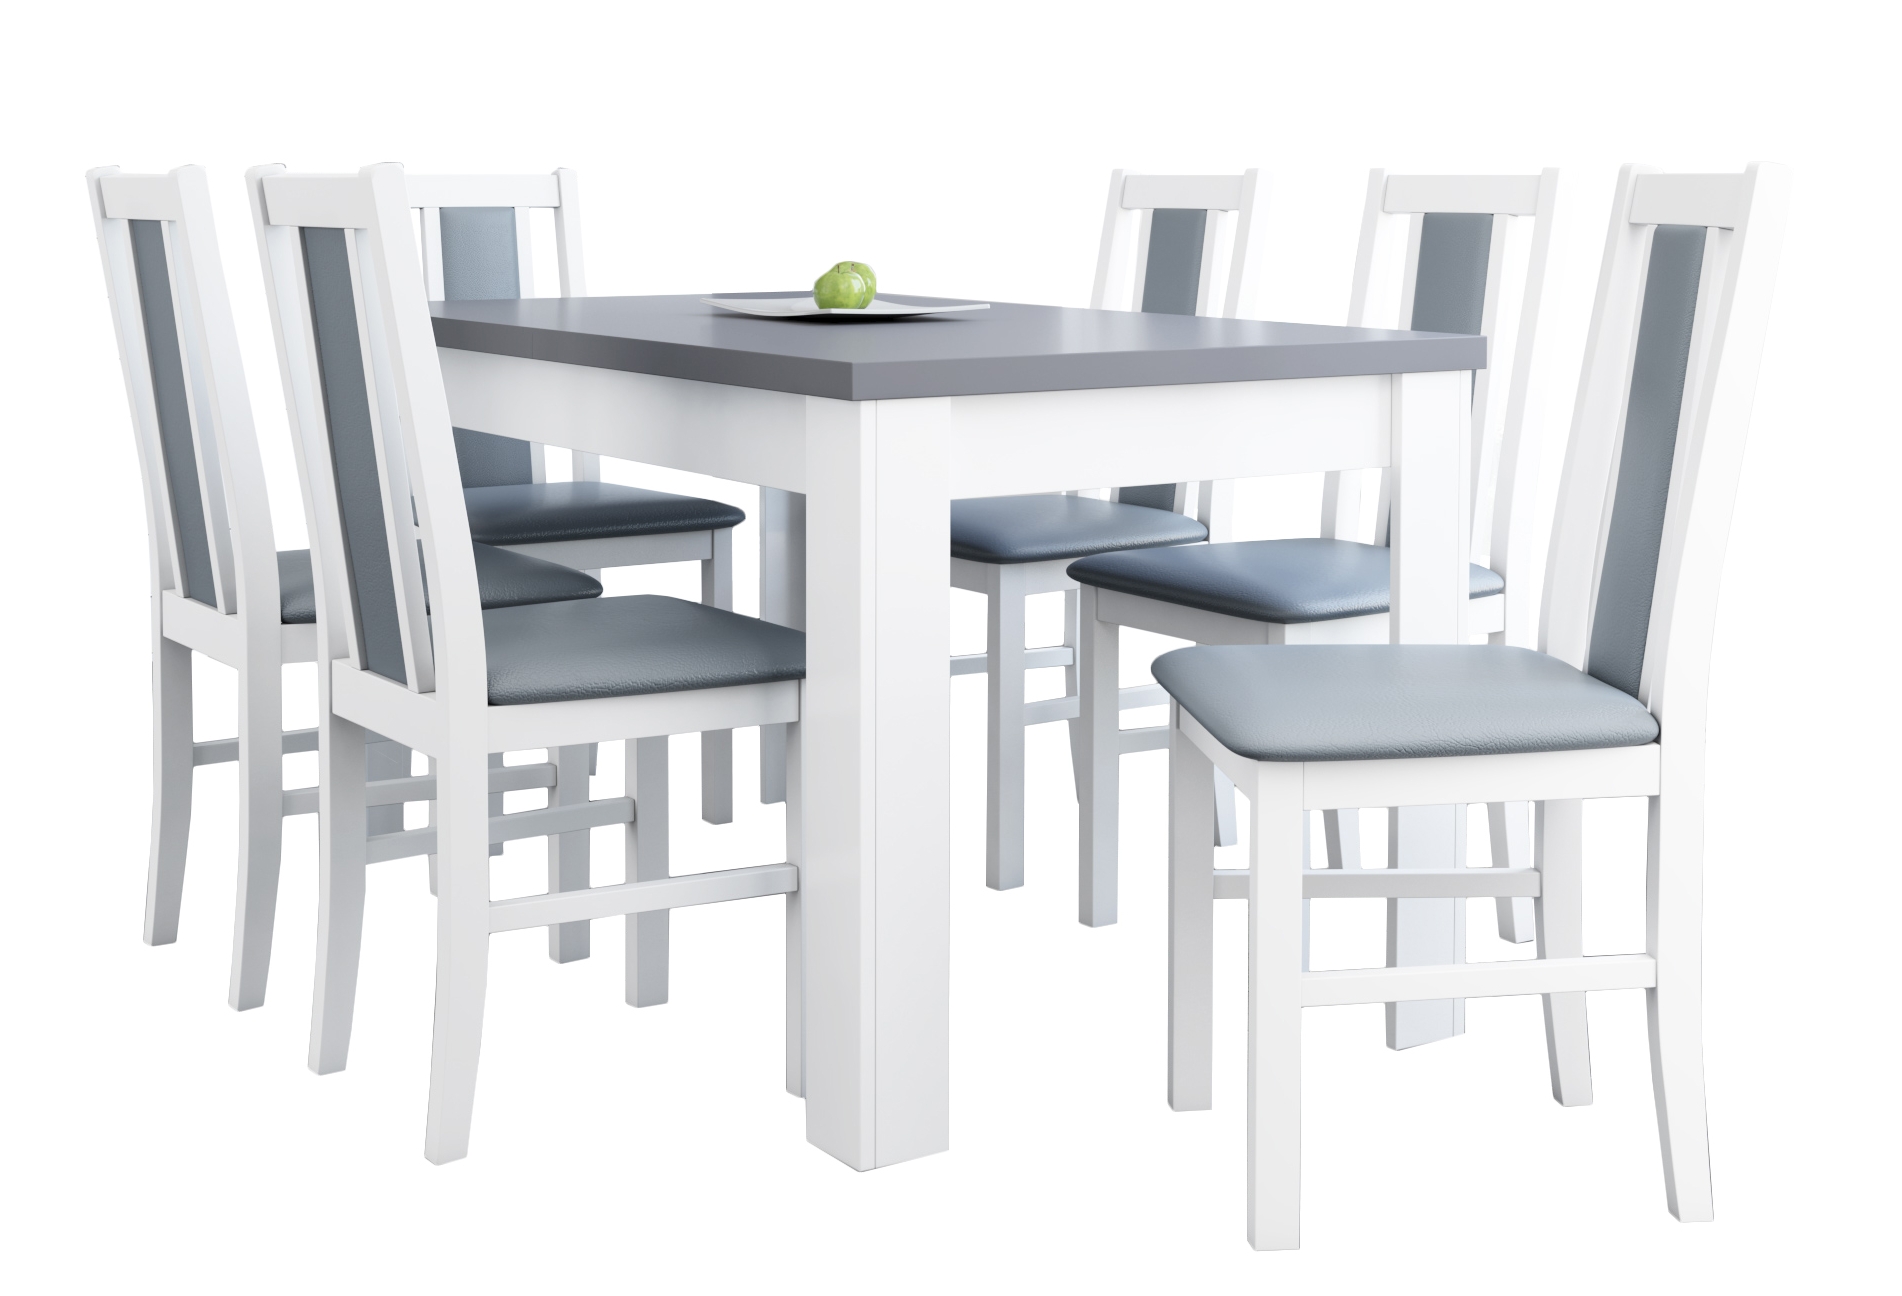 Кухонный комплект стол и стулья. Комплект стол Comfort+ 6 стульев. Белый кухонный стол со стульями. Белый стол и стулья для кухни. Комплект стол и стулья для кухни.